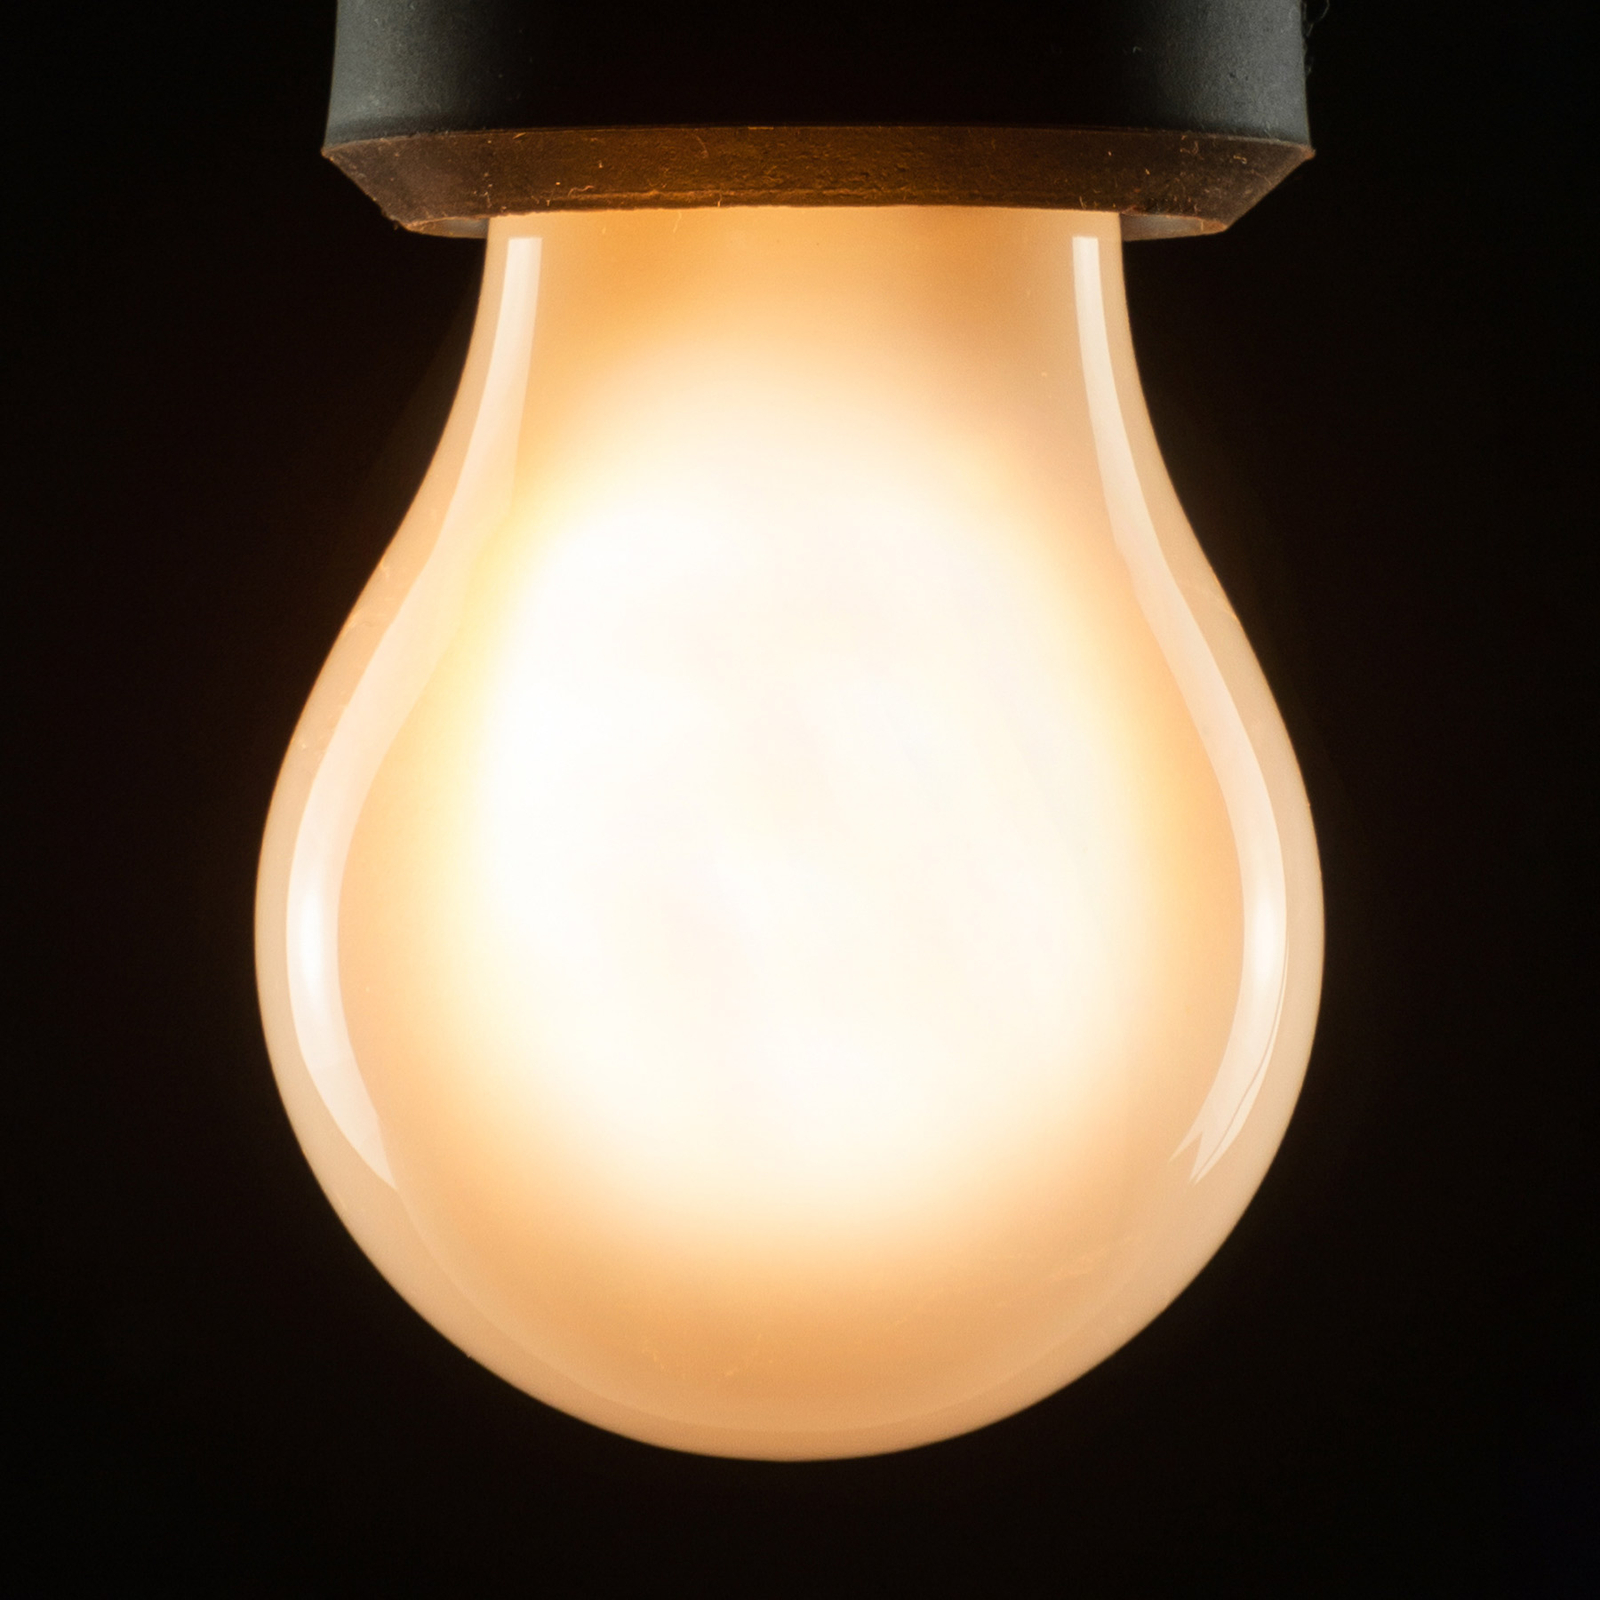 SEGULA LED lámpa A15 E27 3W 2,200K fényerősségű, fényerőszabályzó matt